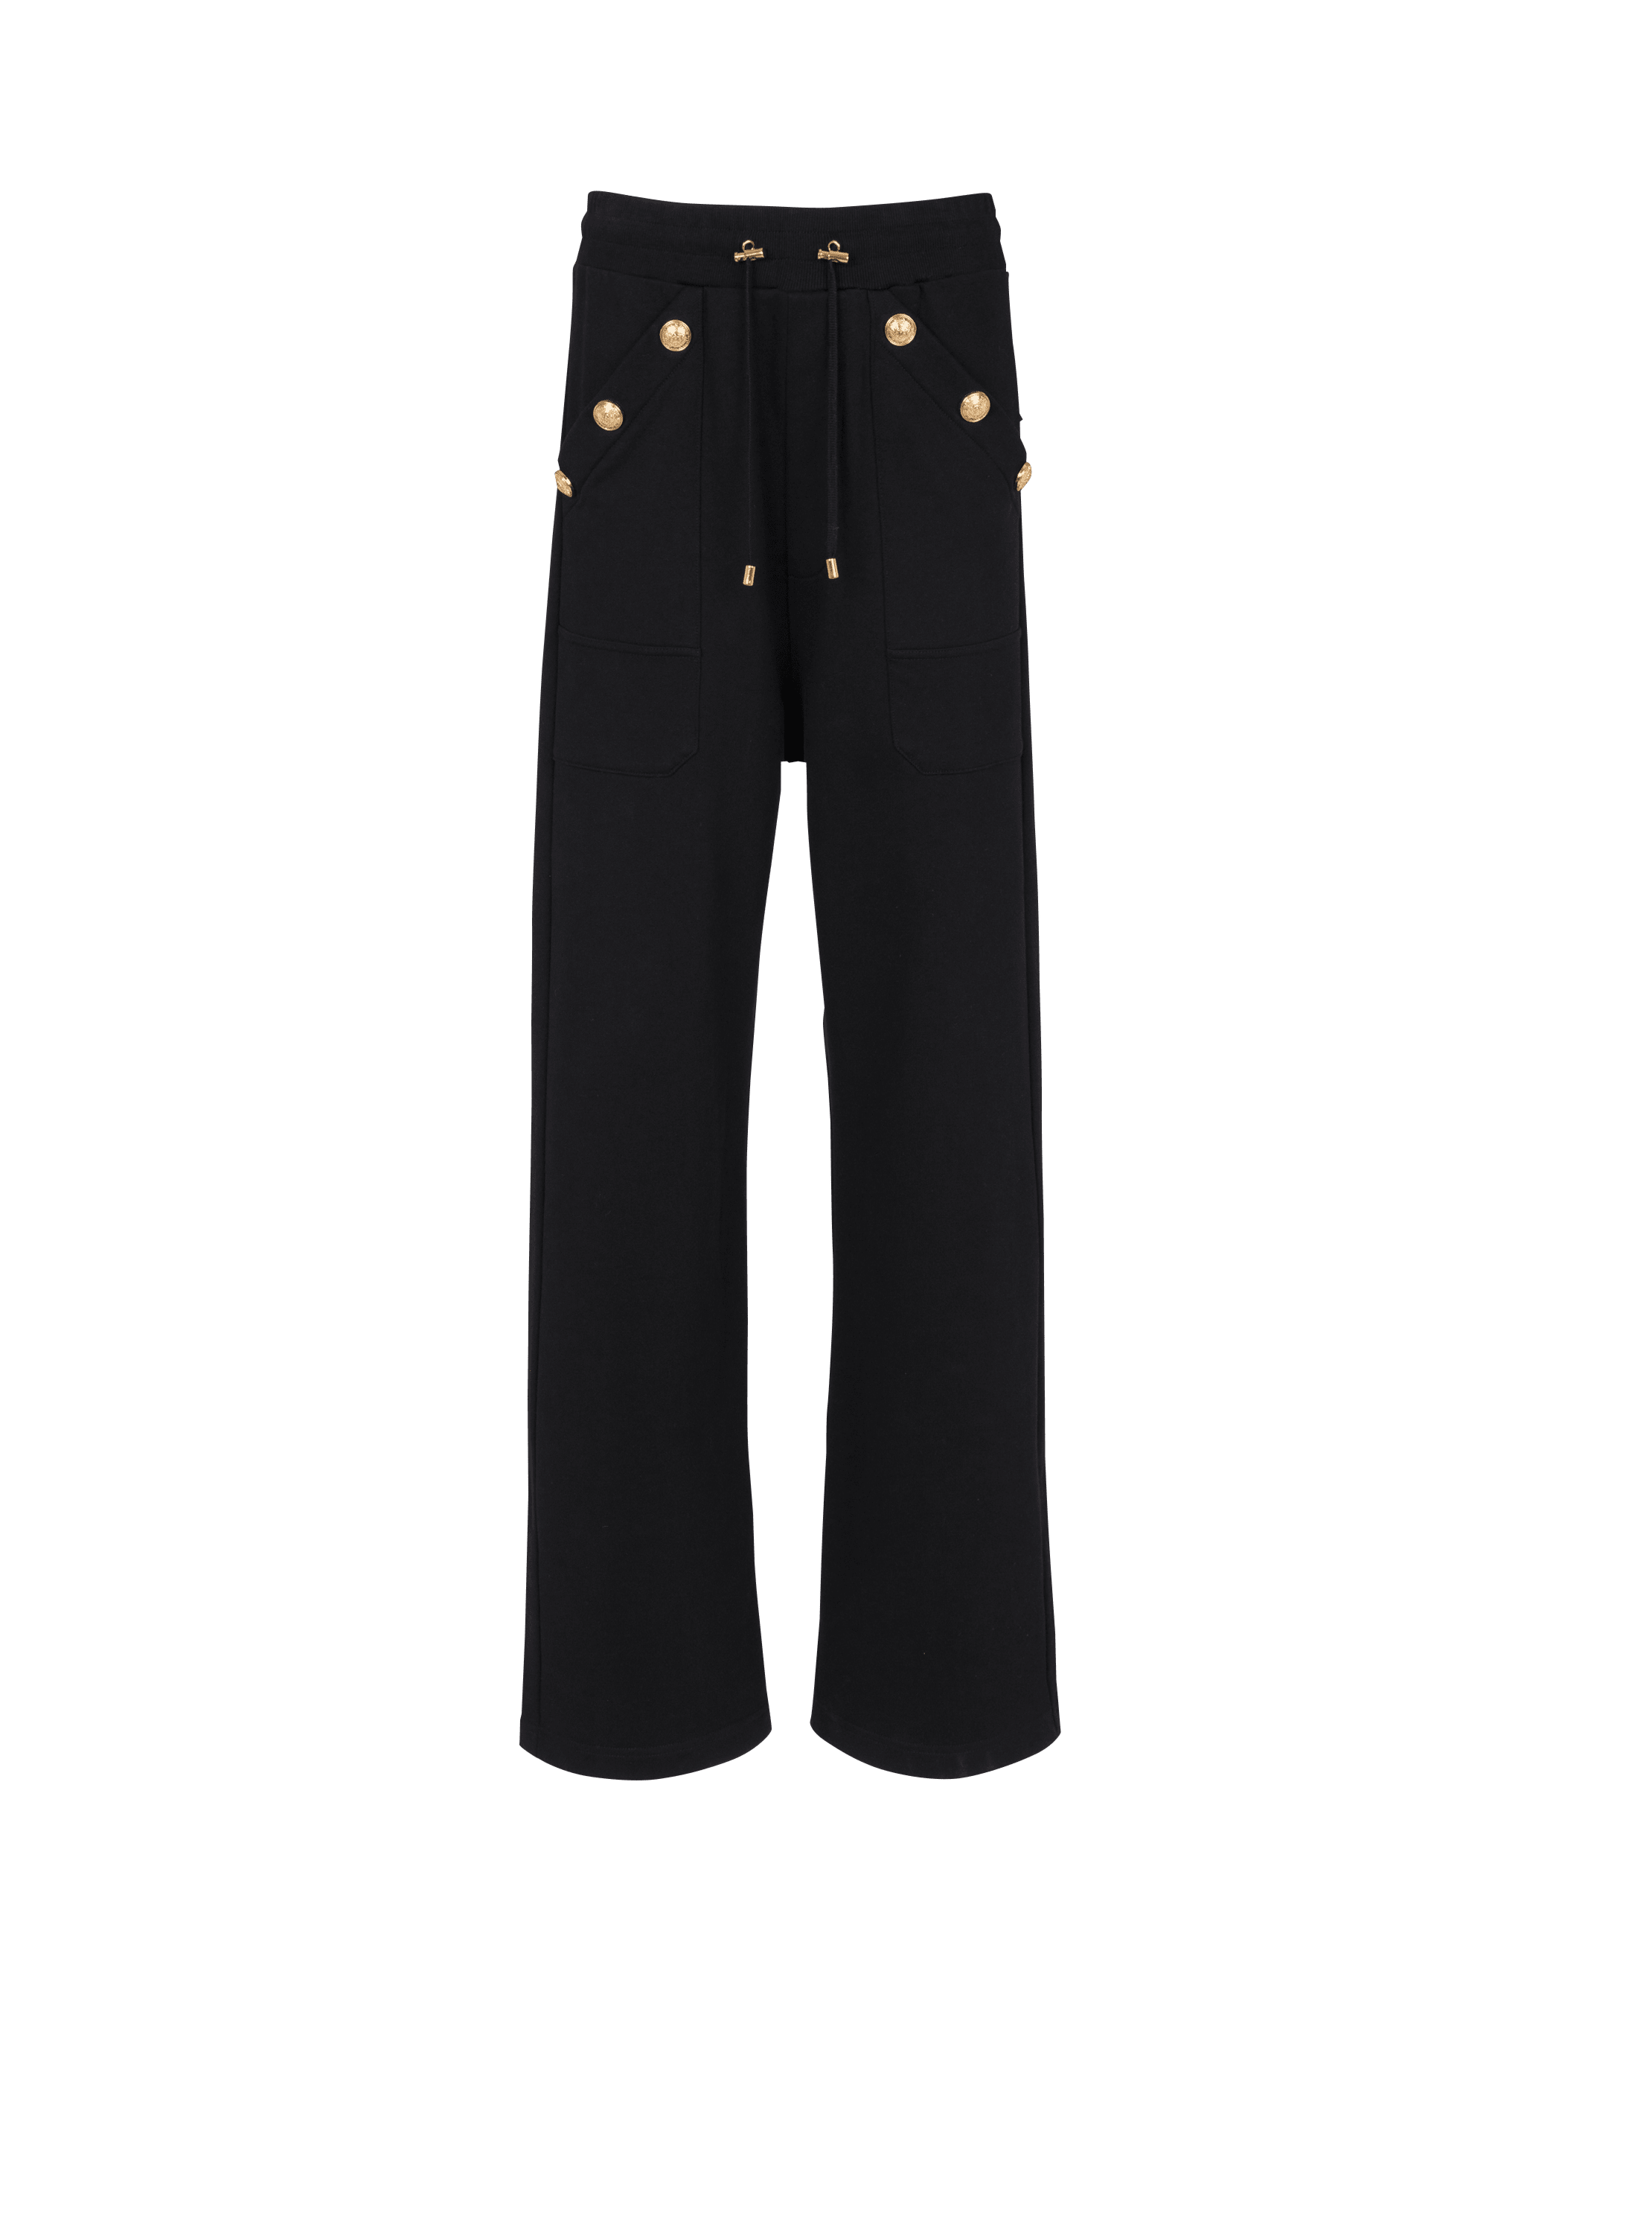 Pantalon de jogging ample en coton éco-responsable, noir, hi-res